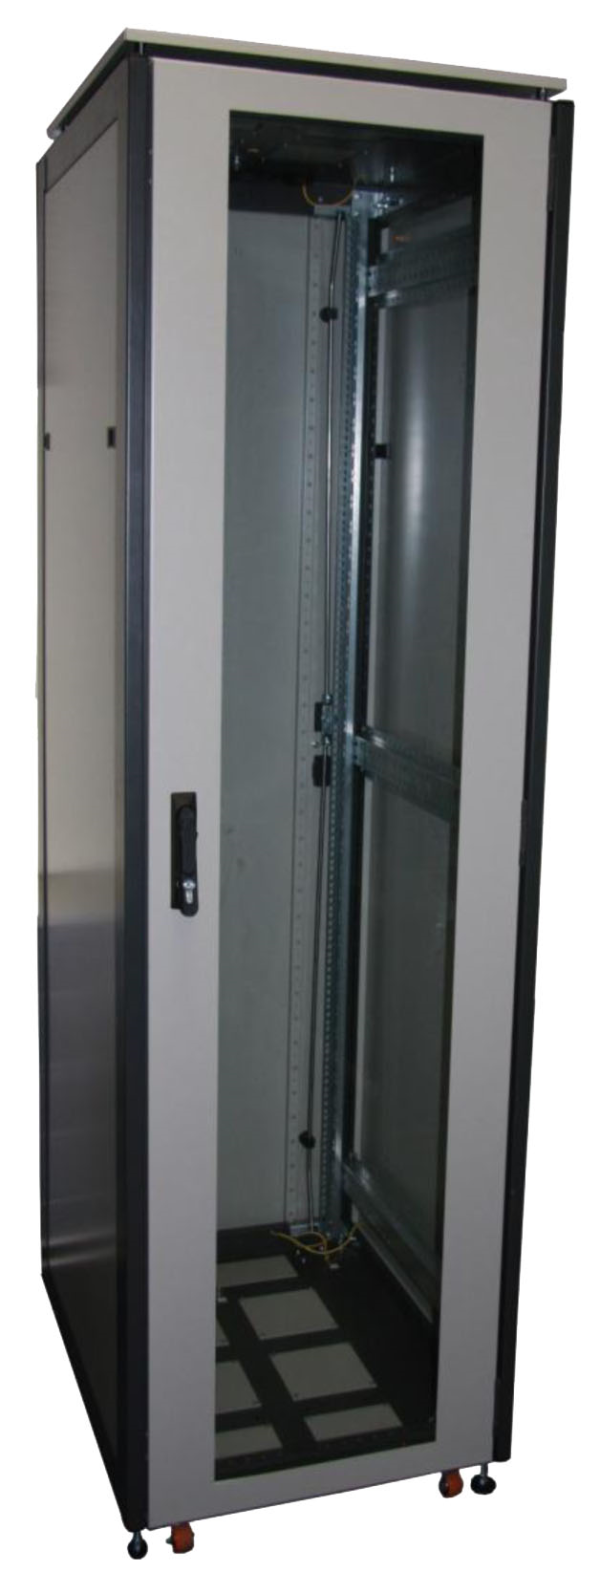 ССКТБ ТОМАСС ШТК-6620Э-01 - шкаф телекоммуникационный 19", 42U, 600х600х2000 мм, с металлической задней панелью и стеклянной дверью